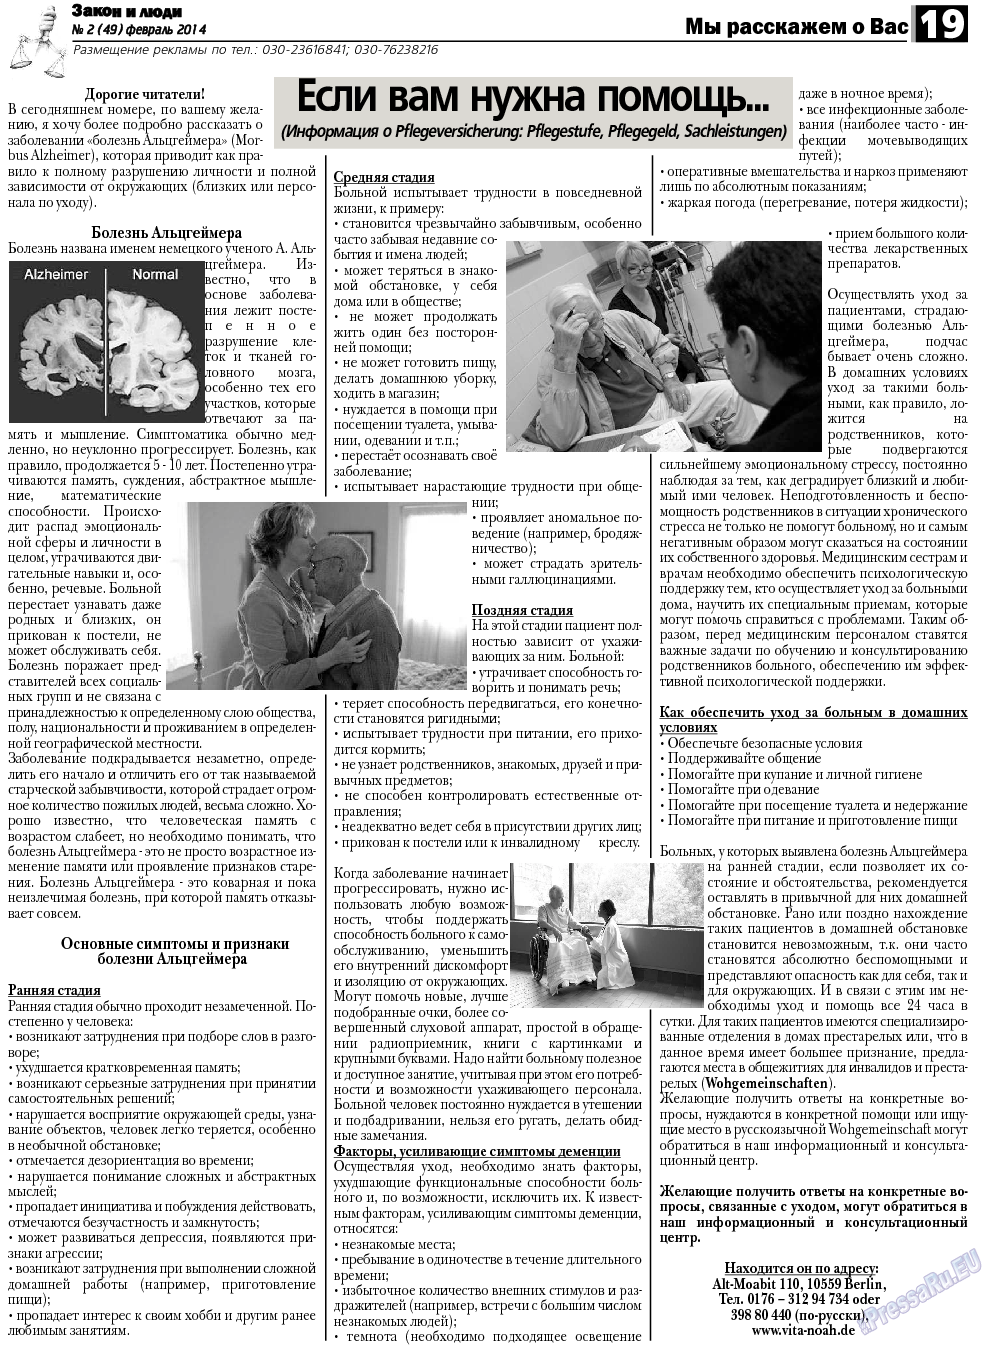 Закон и люди, газета. 2014 №2 стр.19